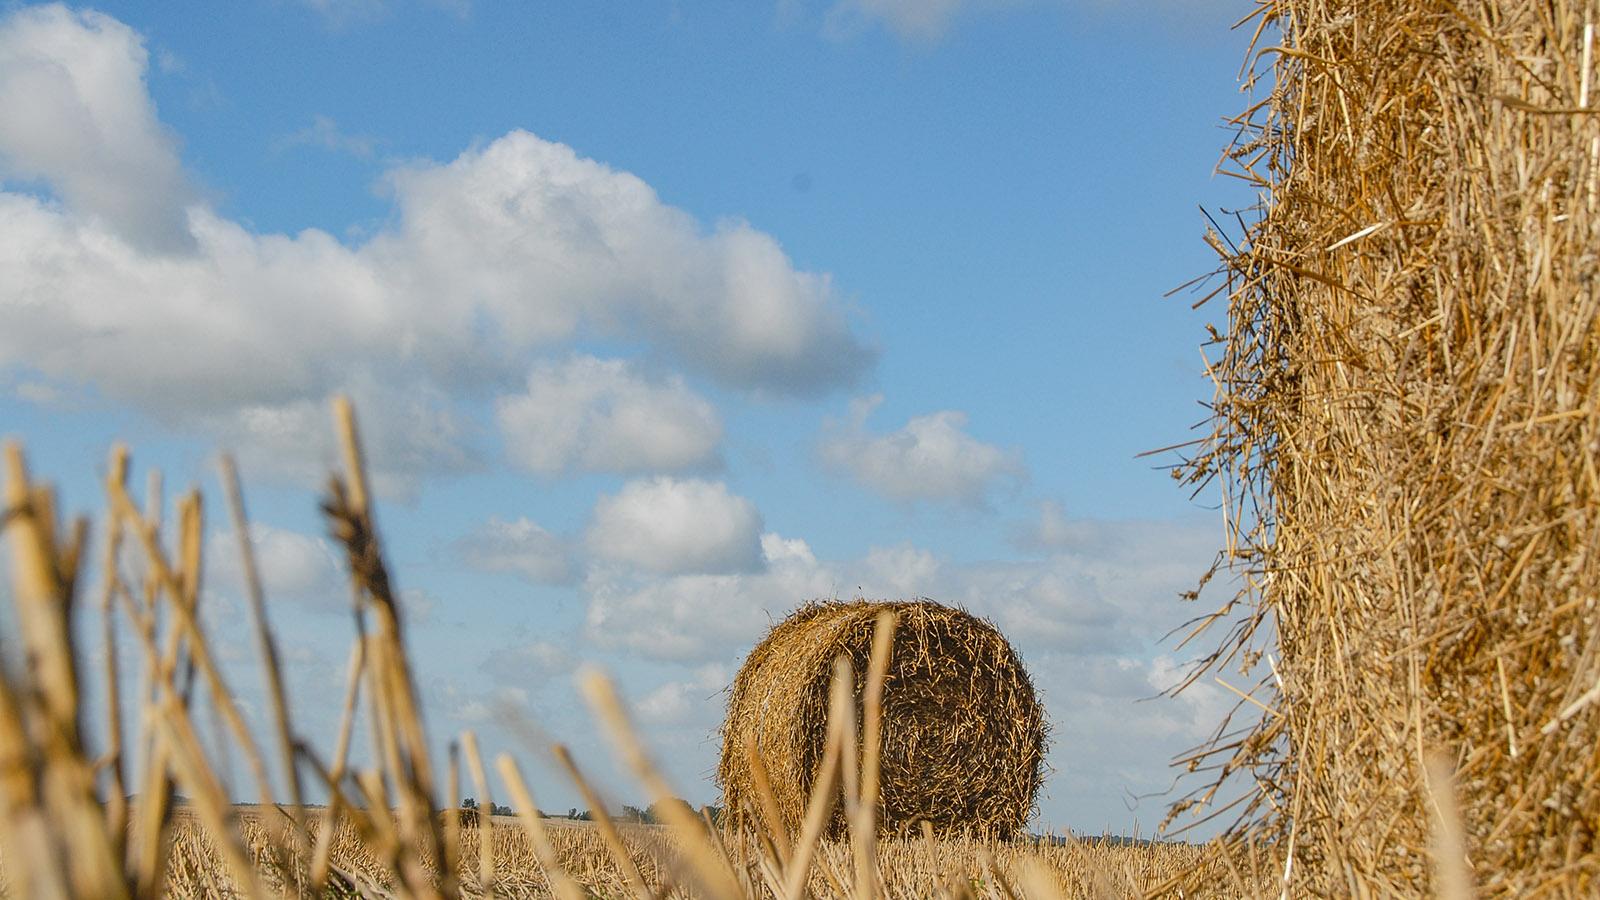 Zwischen Doullens und Amiens: abgeerntete Kornfelder. Foto: Hilke Maunderwischen Doullens und Amien: abgeerntete Kornfelder